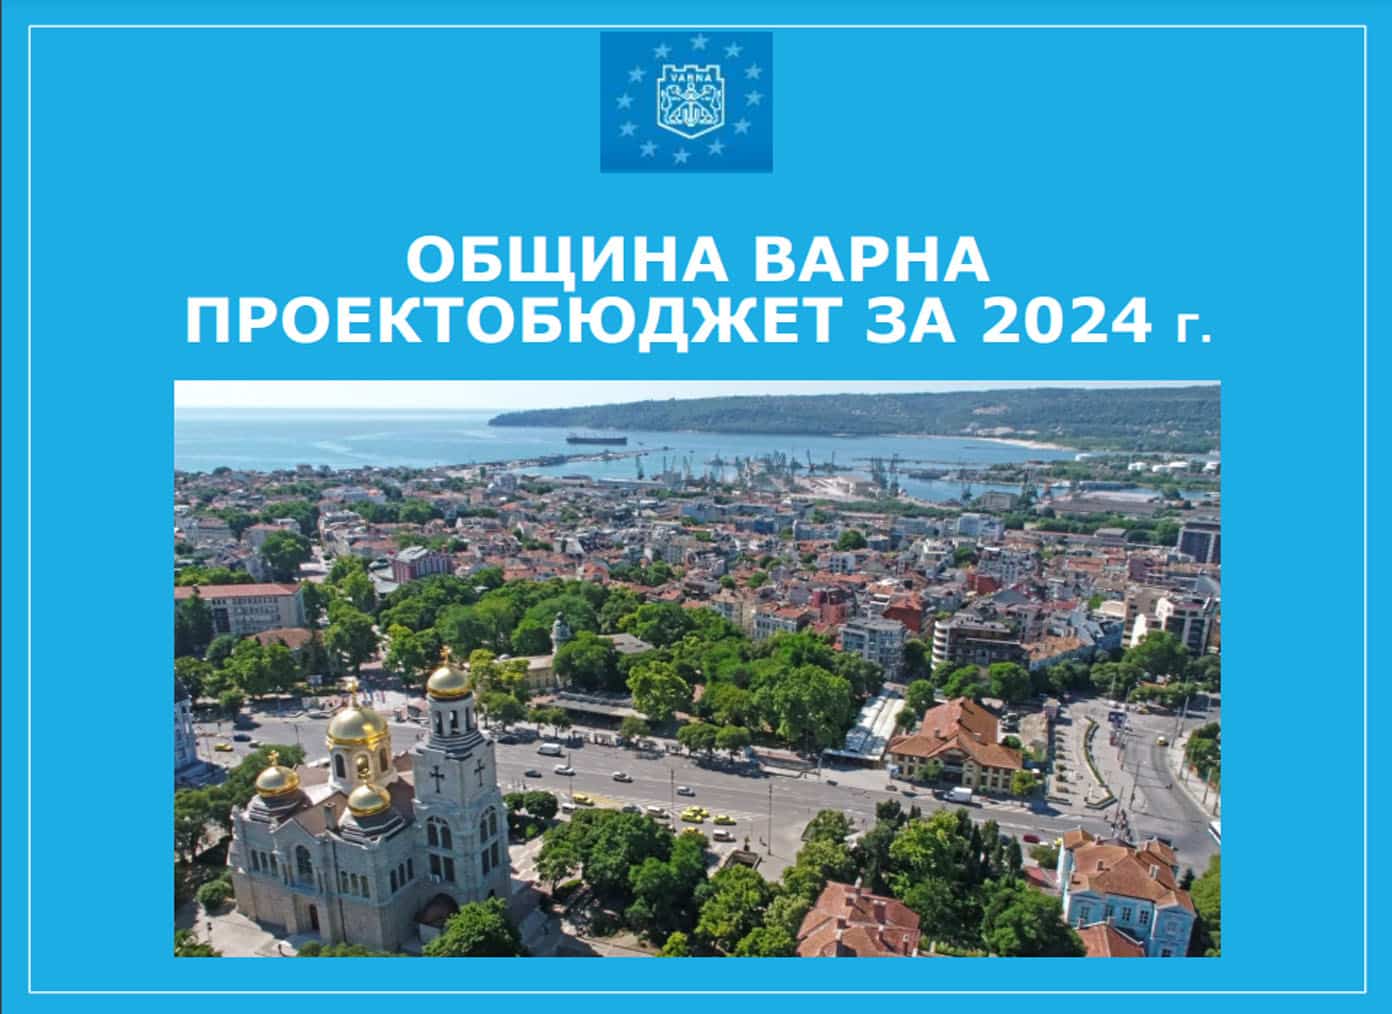 Община Варна публикува проектобюджета за 2024 година, съобщиха от местната